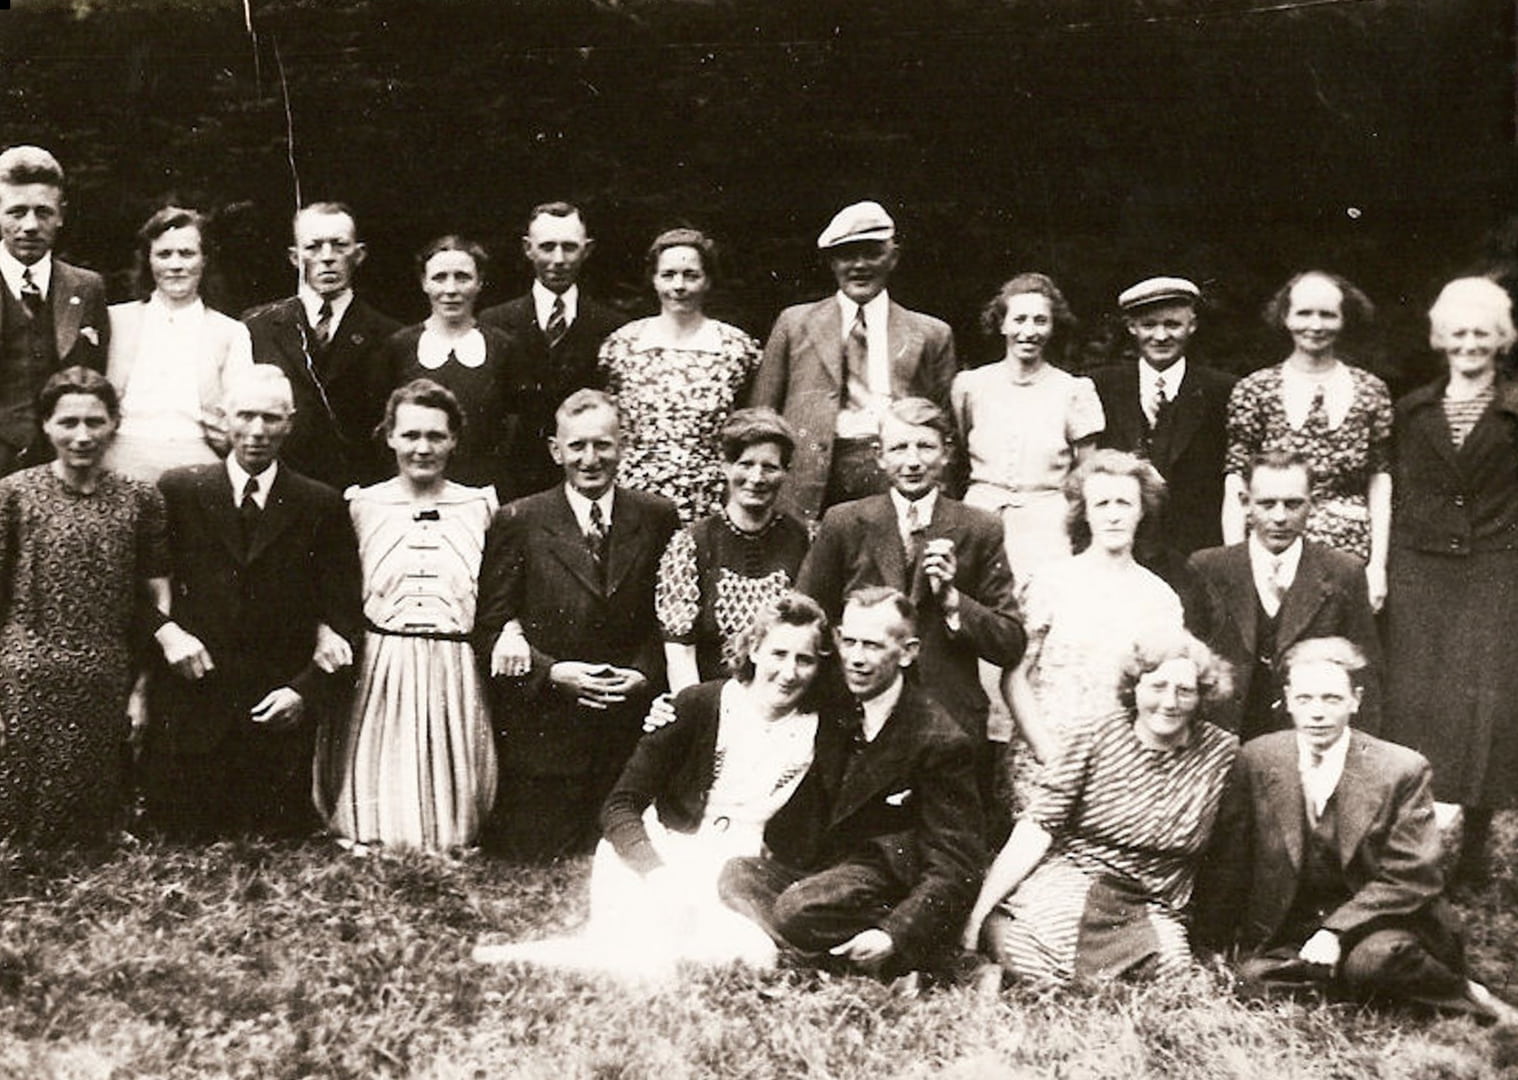 Middenstandsvereniging Grolloo met de Jan Plezier naar Paterswolde,1946